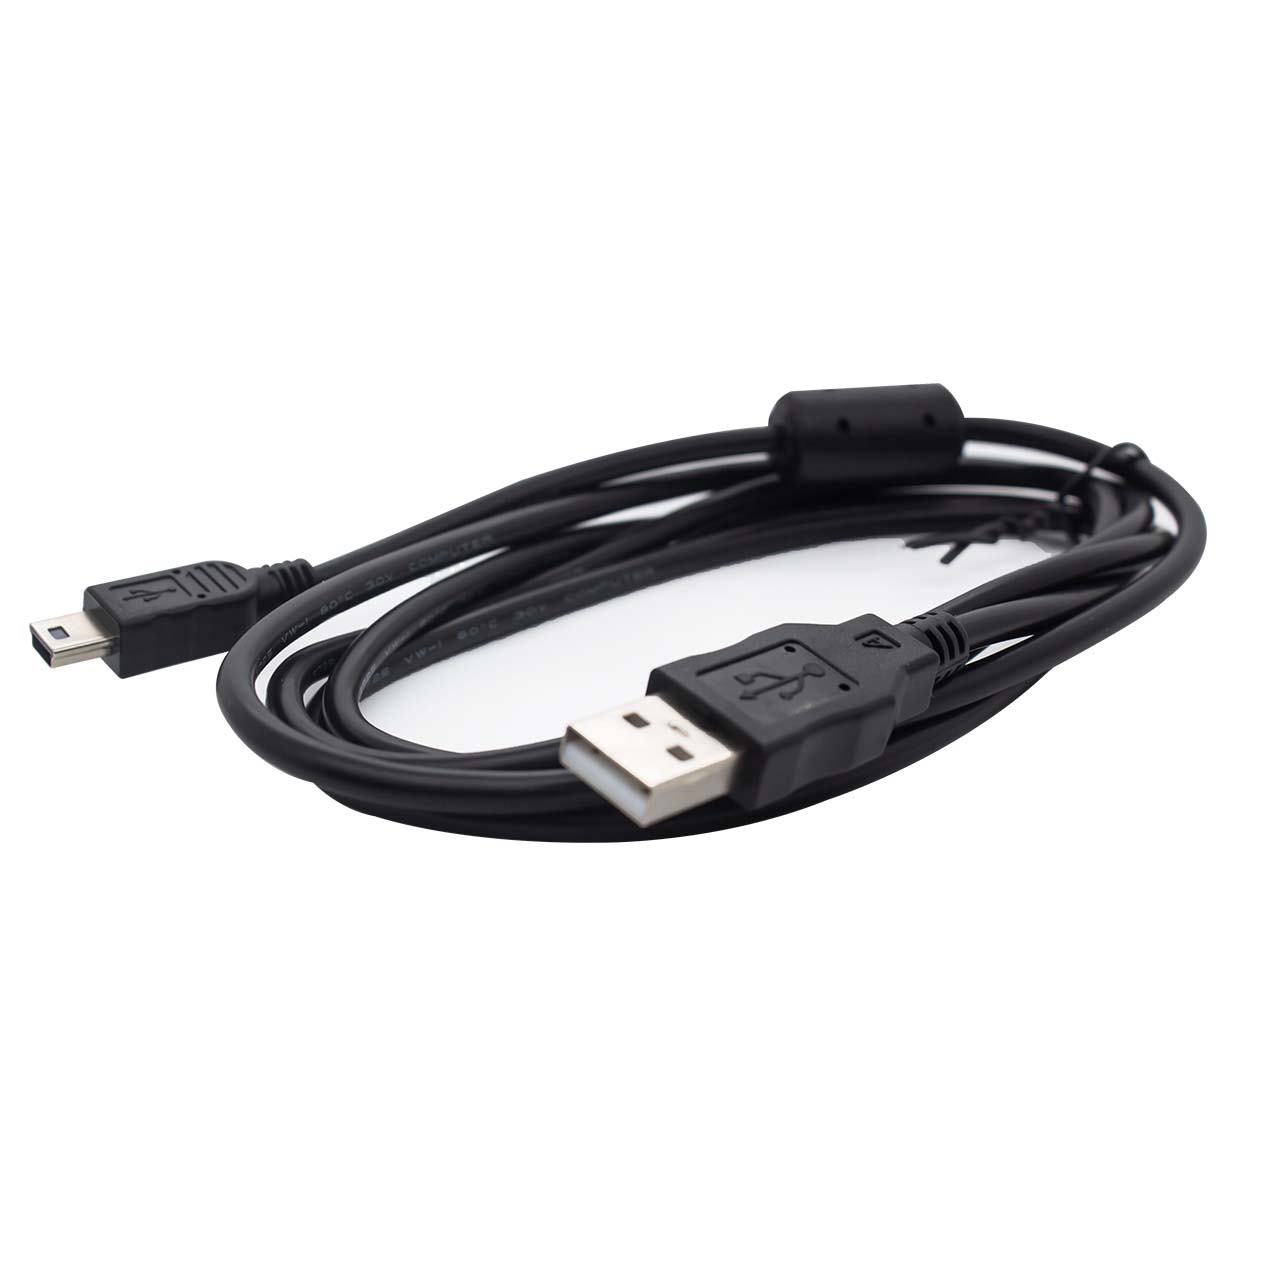 USB数据线t型口充电数据线/串口屏/转接板